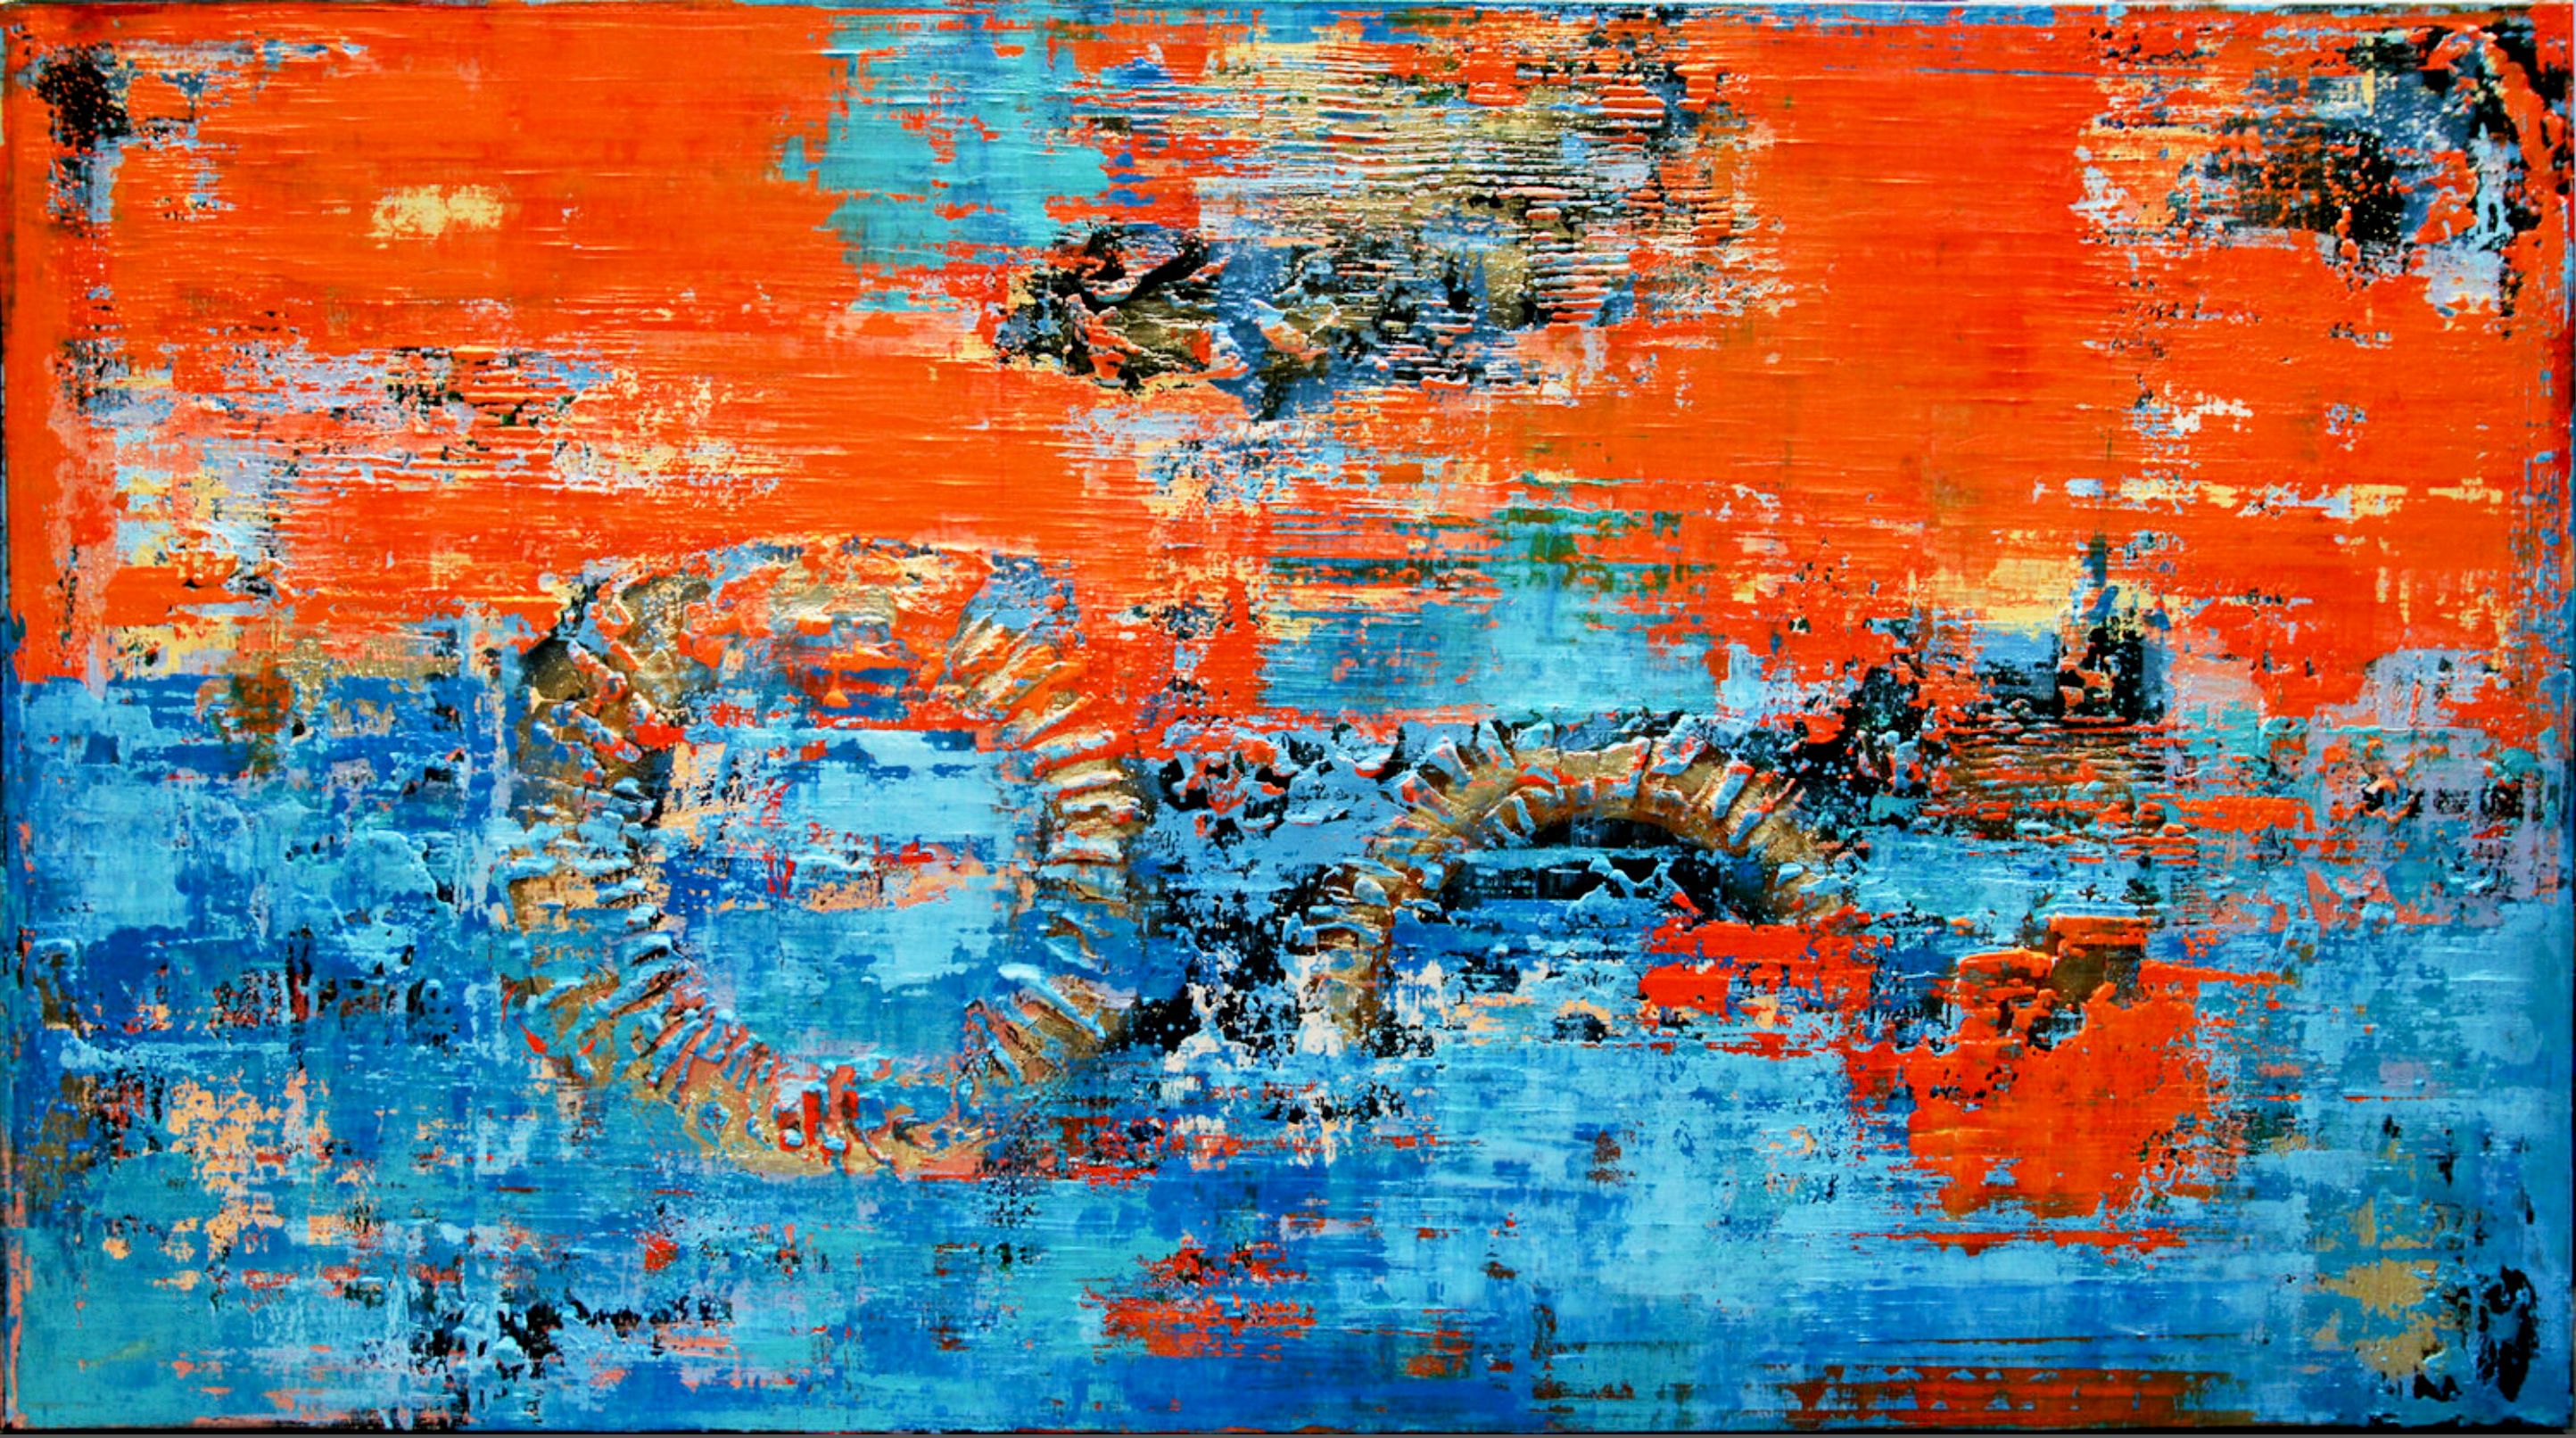 In Inez Froehlich's "RIMINI" abstraktes farbenfrohes Gemälde mit Strukturen. Warme, lebendige Farben in Rot und  Blau. Der Stil des Gemäldes ist Shabby chic, Industriestil, Vintage, Retro, Bohemien Interieur